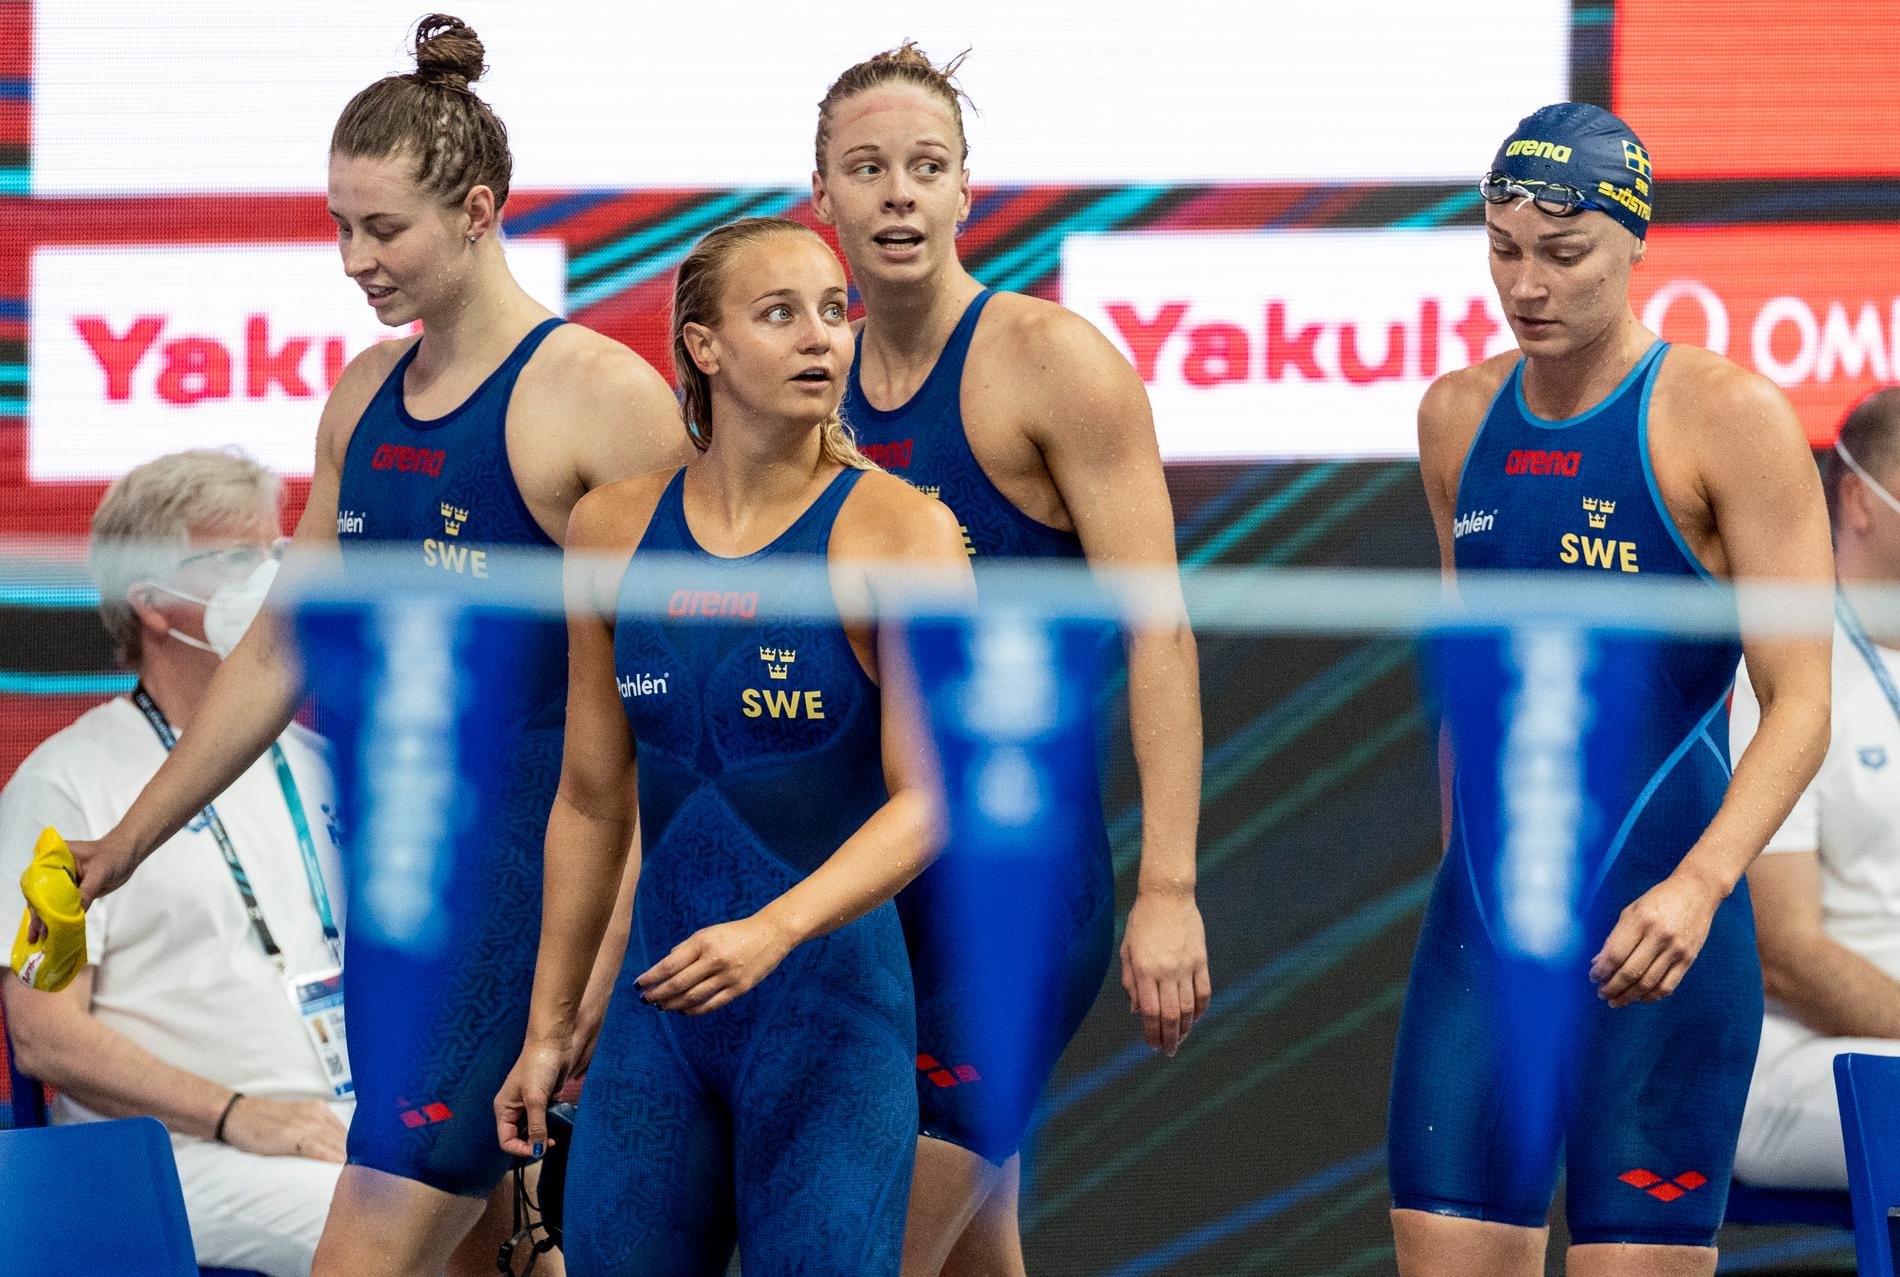 Sveriges lag i 4x100m medley med Hanna Rosvall, Sophie Hansson, Louise Hansson och Sarah Sjöström.